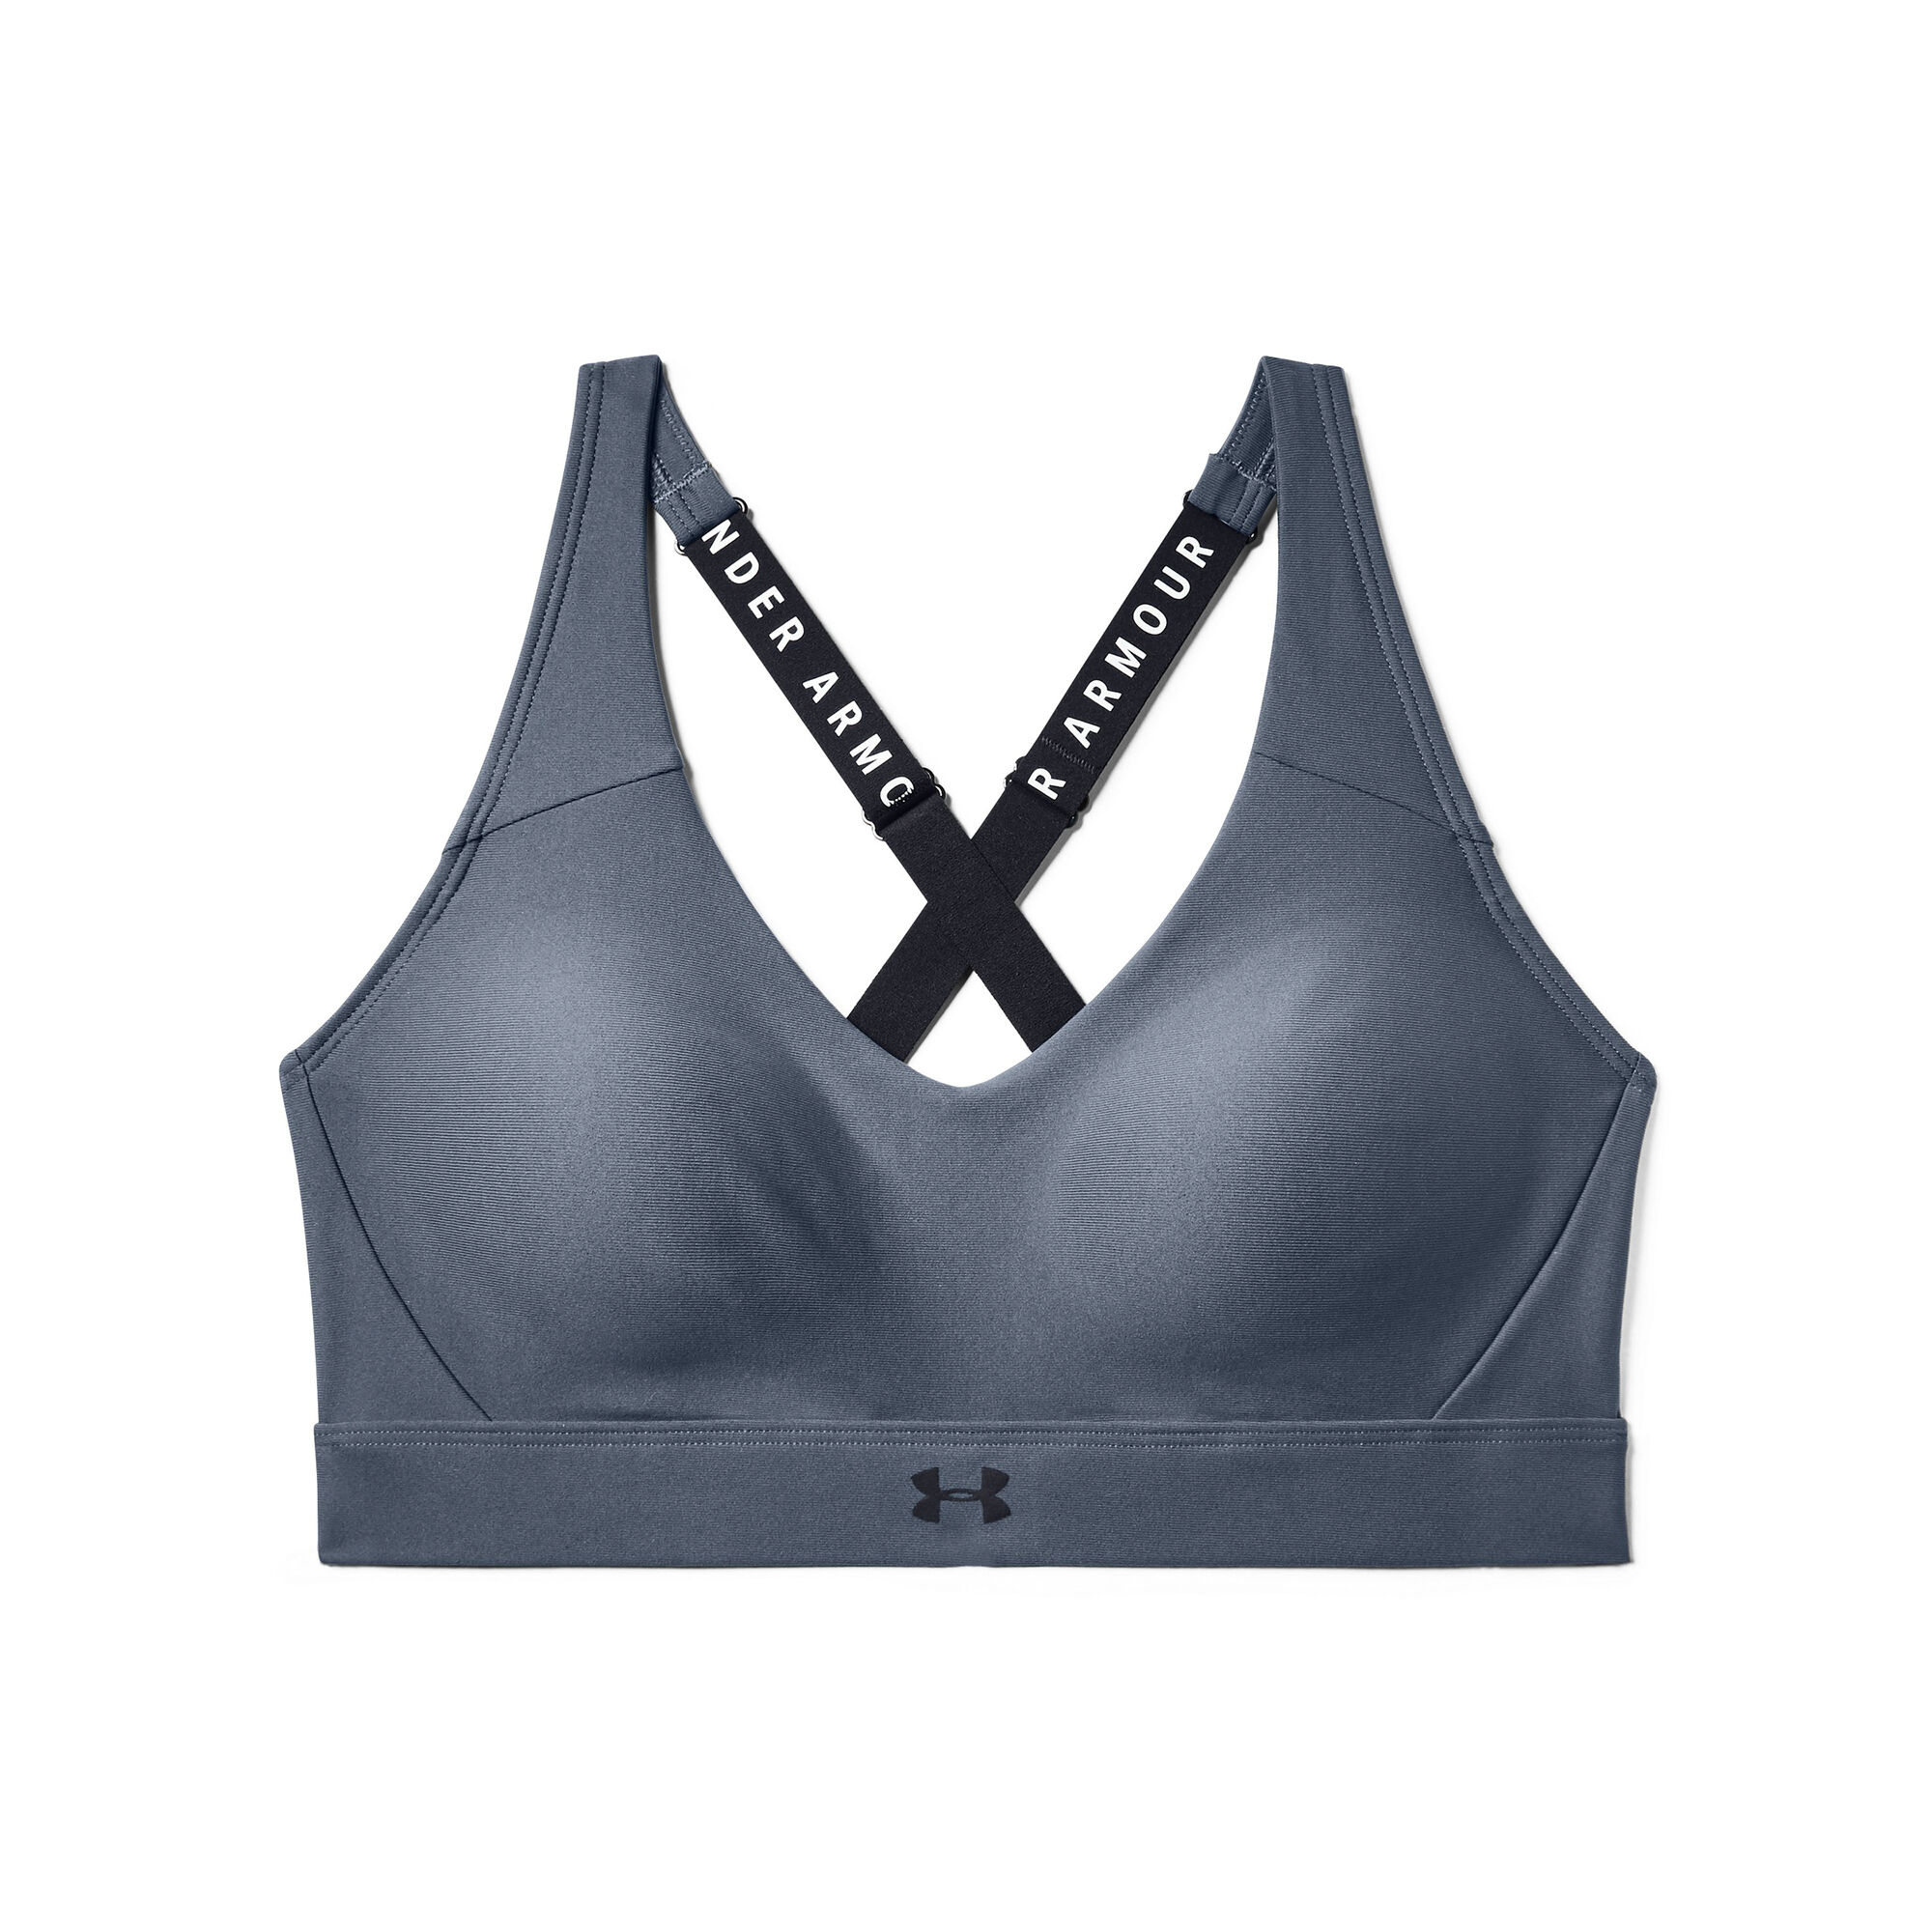 buy Under Armour Vanish Mid Sports Bras Women - Dark Grey, Silver online |  Tennis-Point